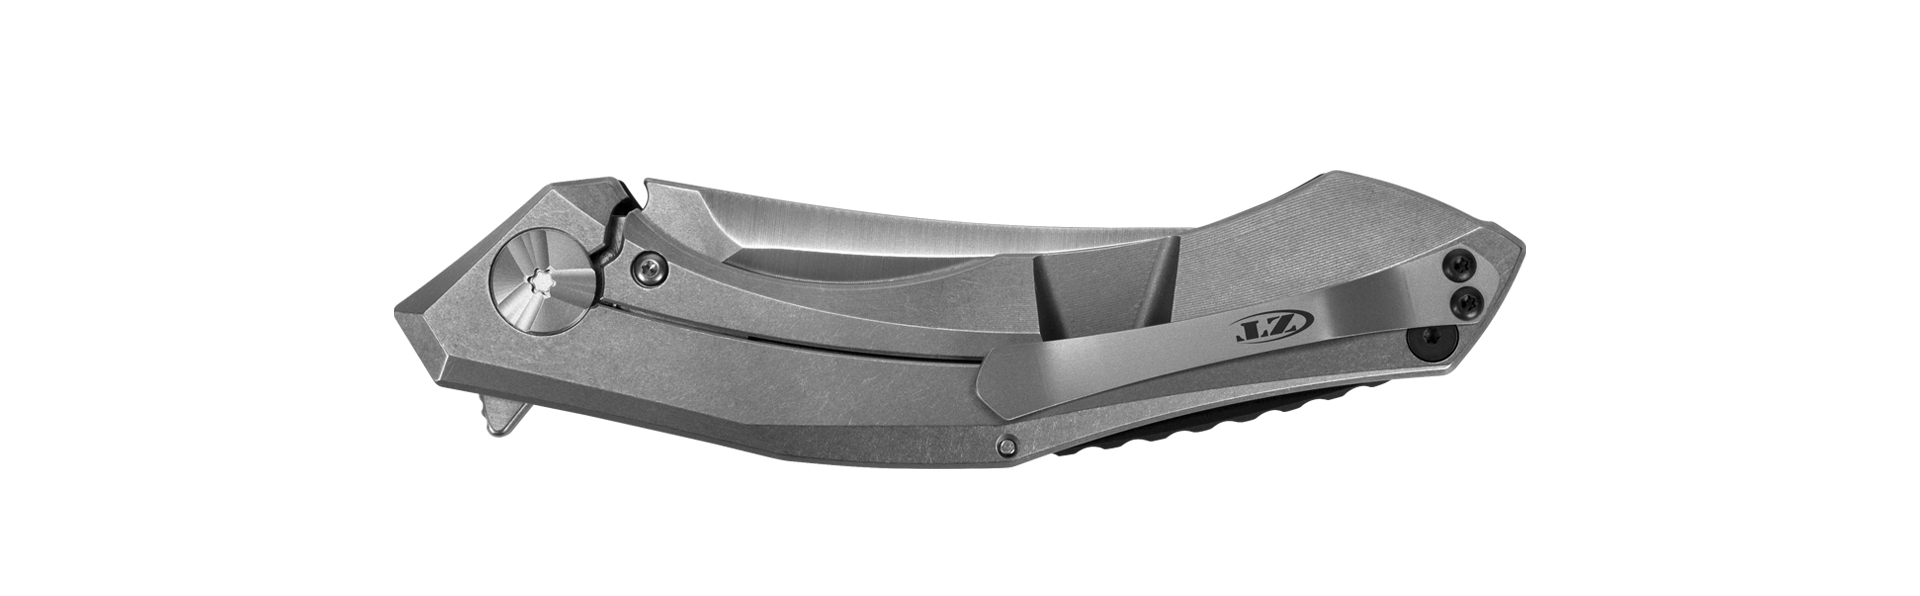 ZT0462 Large Sinkevich Folding Knife - 20CV Steel W/ Red Carbon Fiber | Zero Tolerance